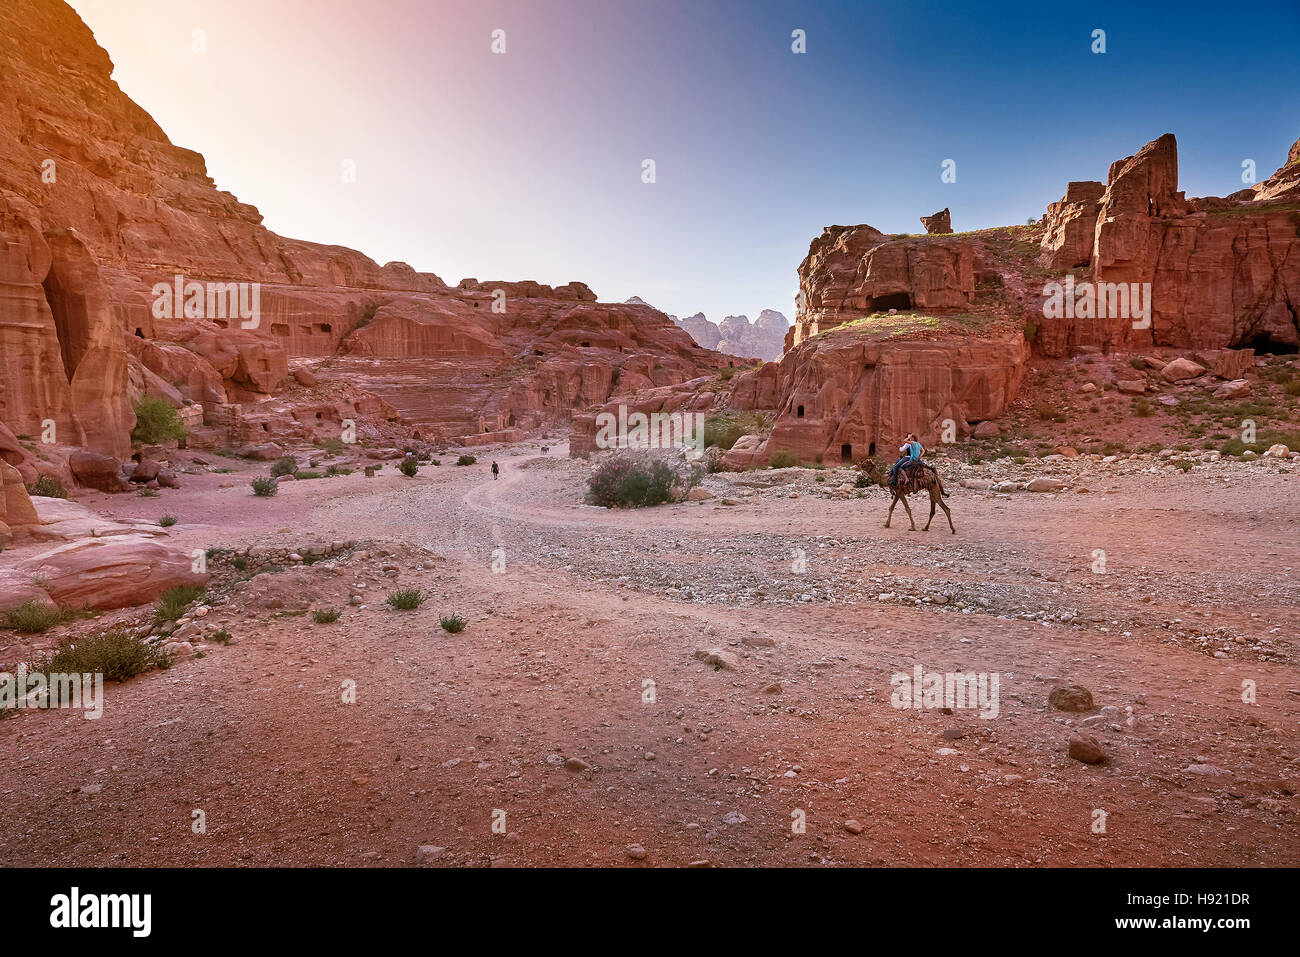 Ancient city of Petra, Jordan Stock Photo